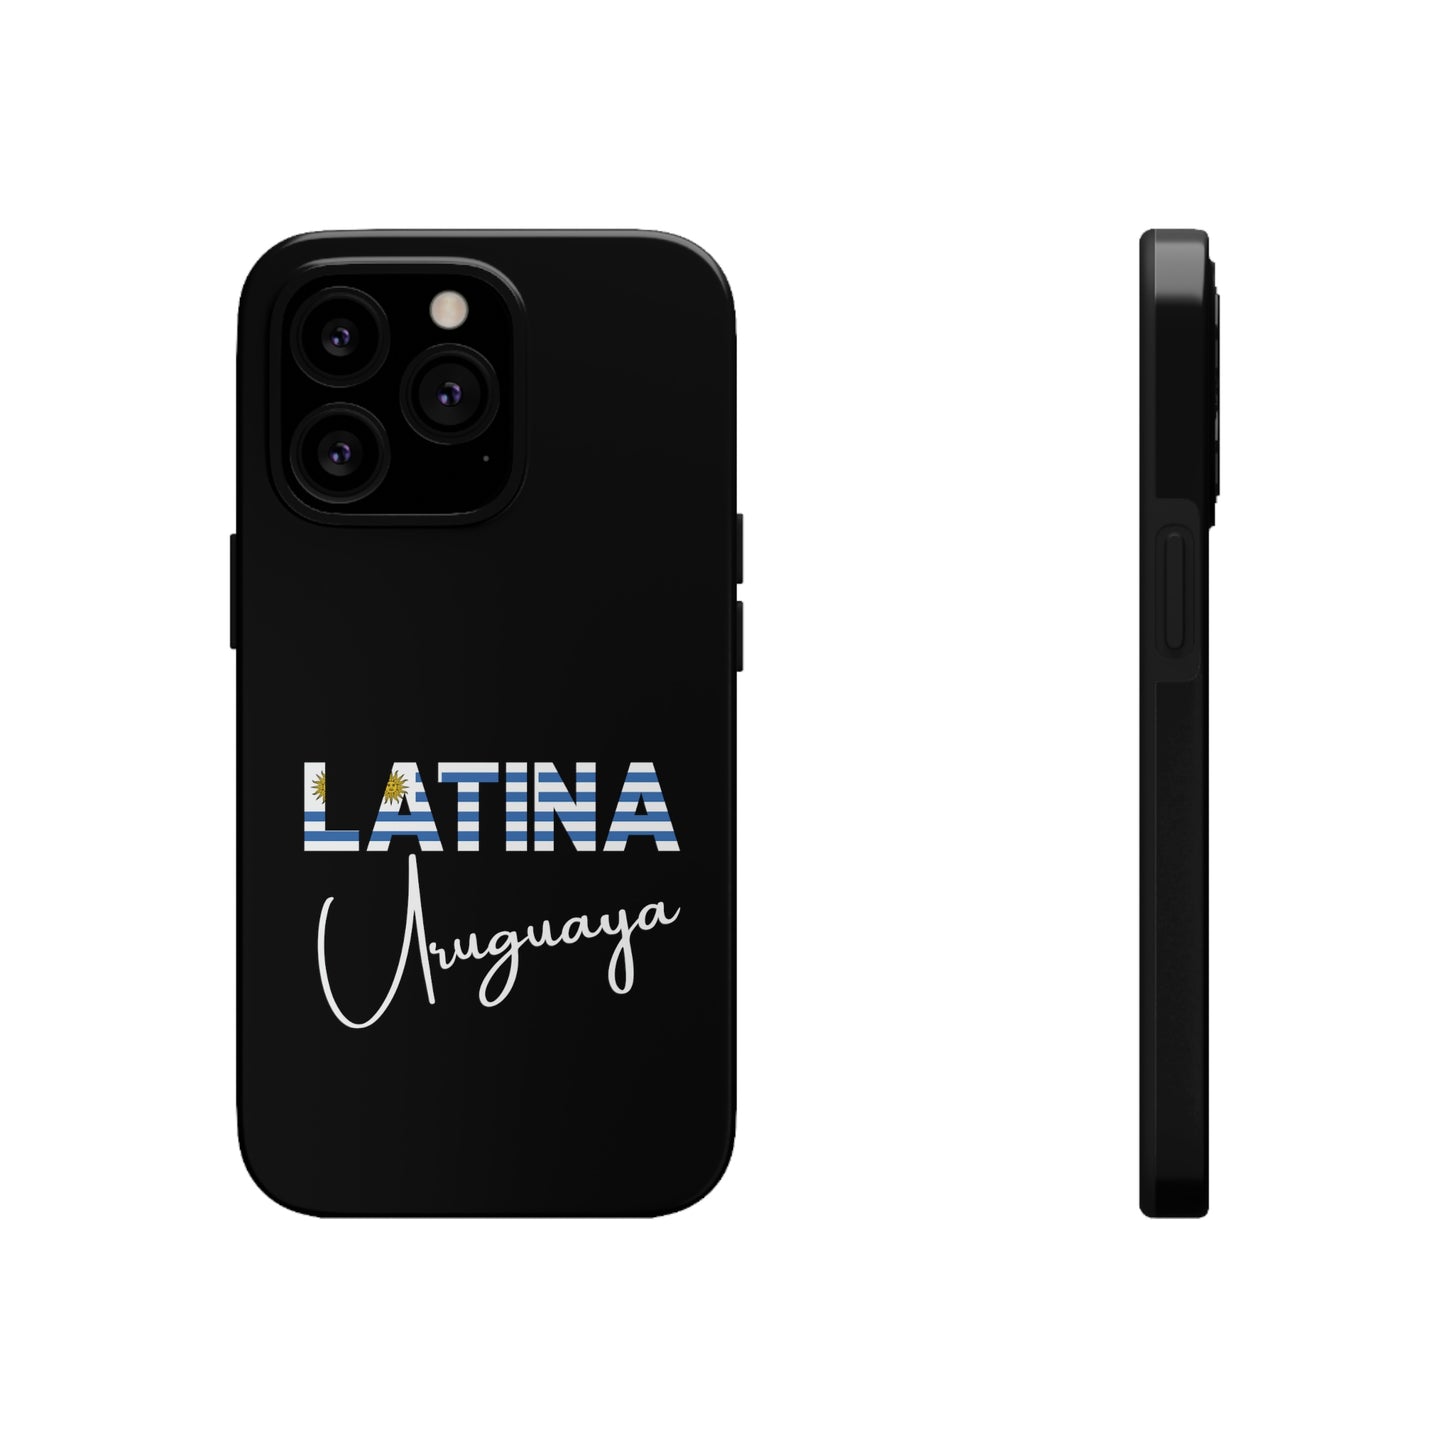 Latina Uruguaya, Tough iPhone Case